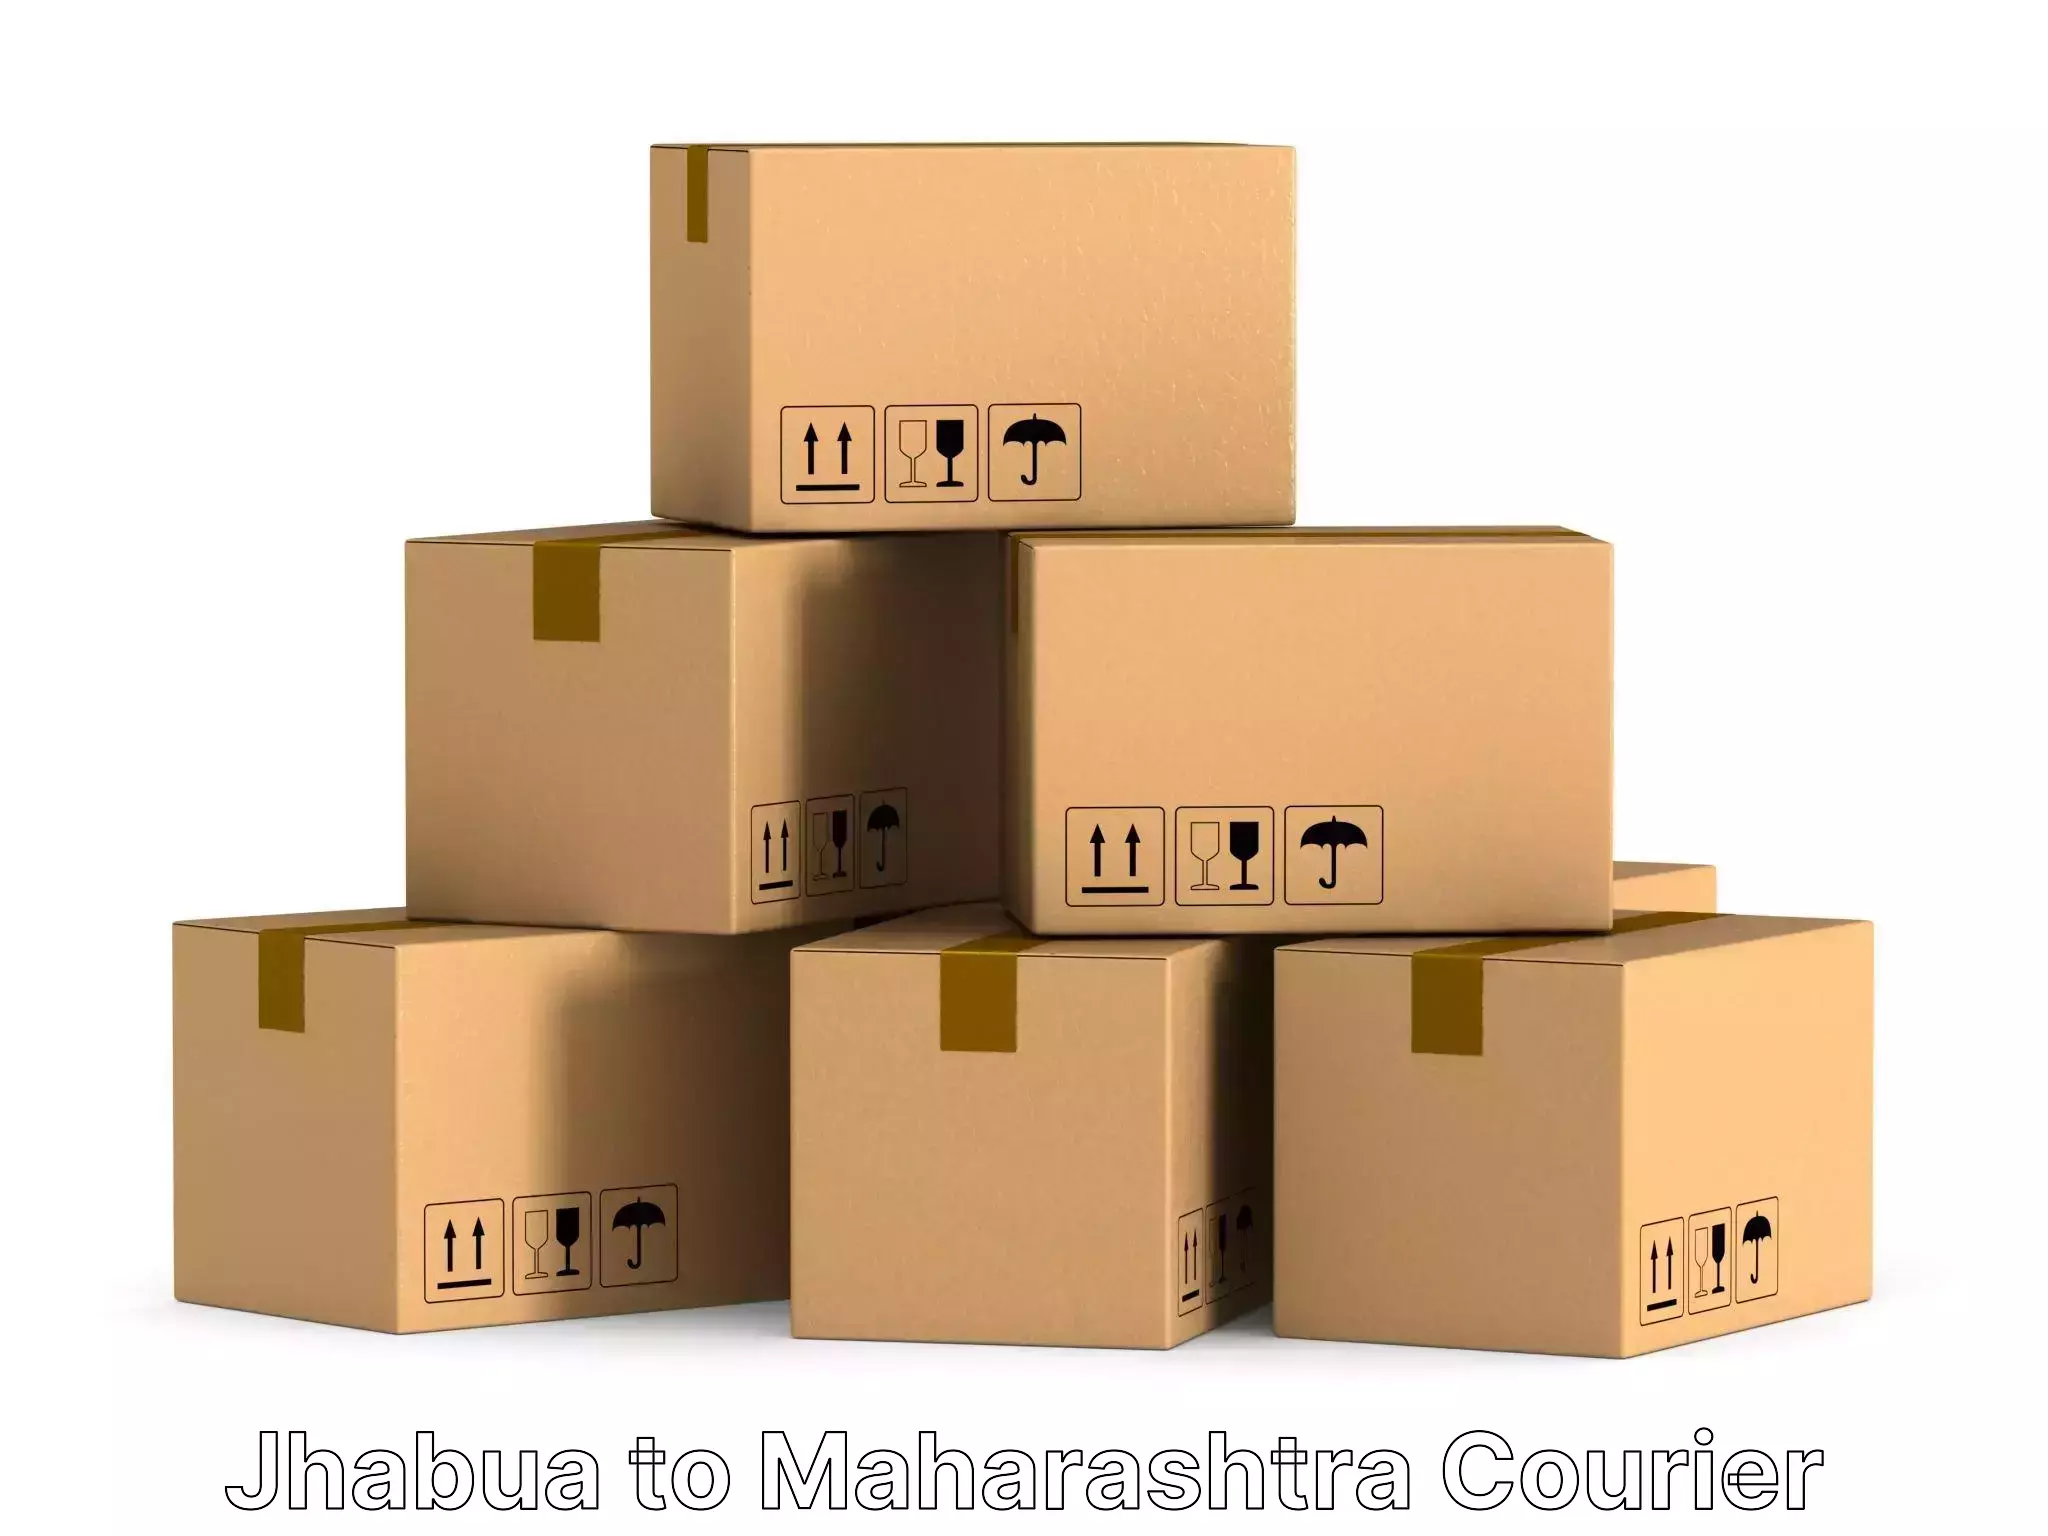 Home goods transportation Jhabua to Maharashtra